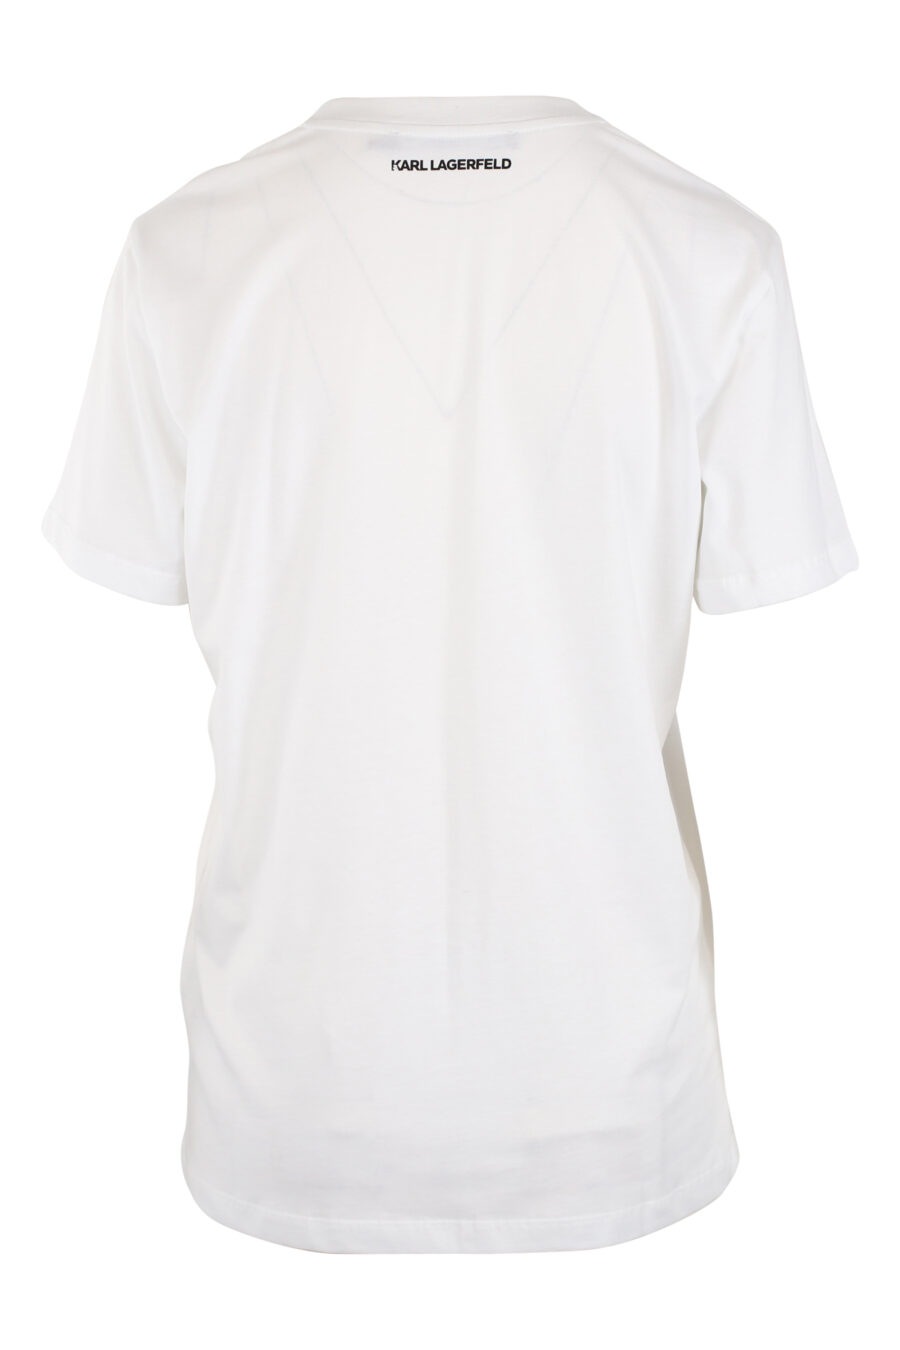 Camiseta blanca con maxilogo gráfico - IMG 5481